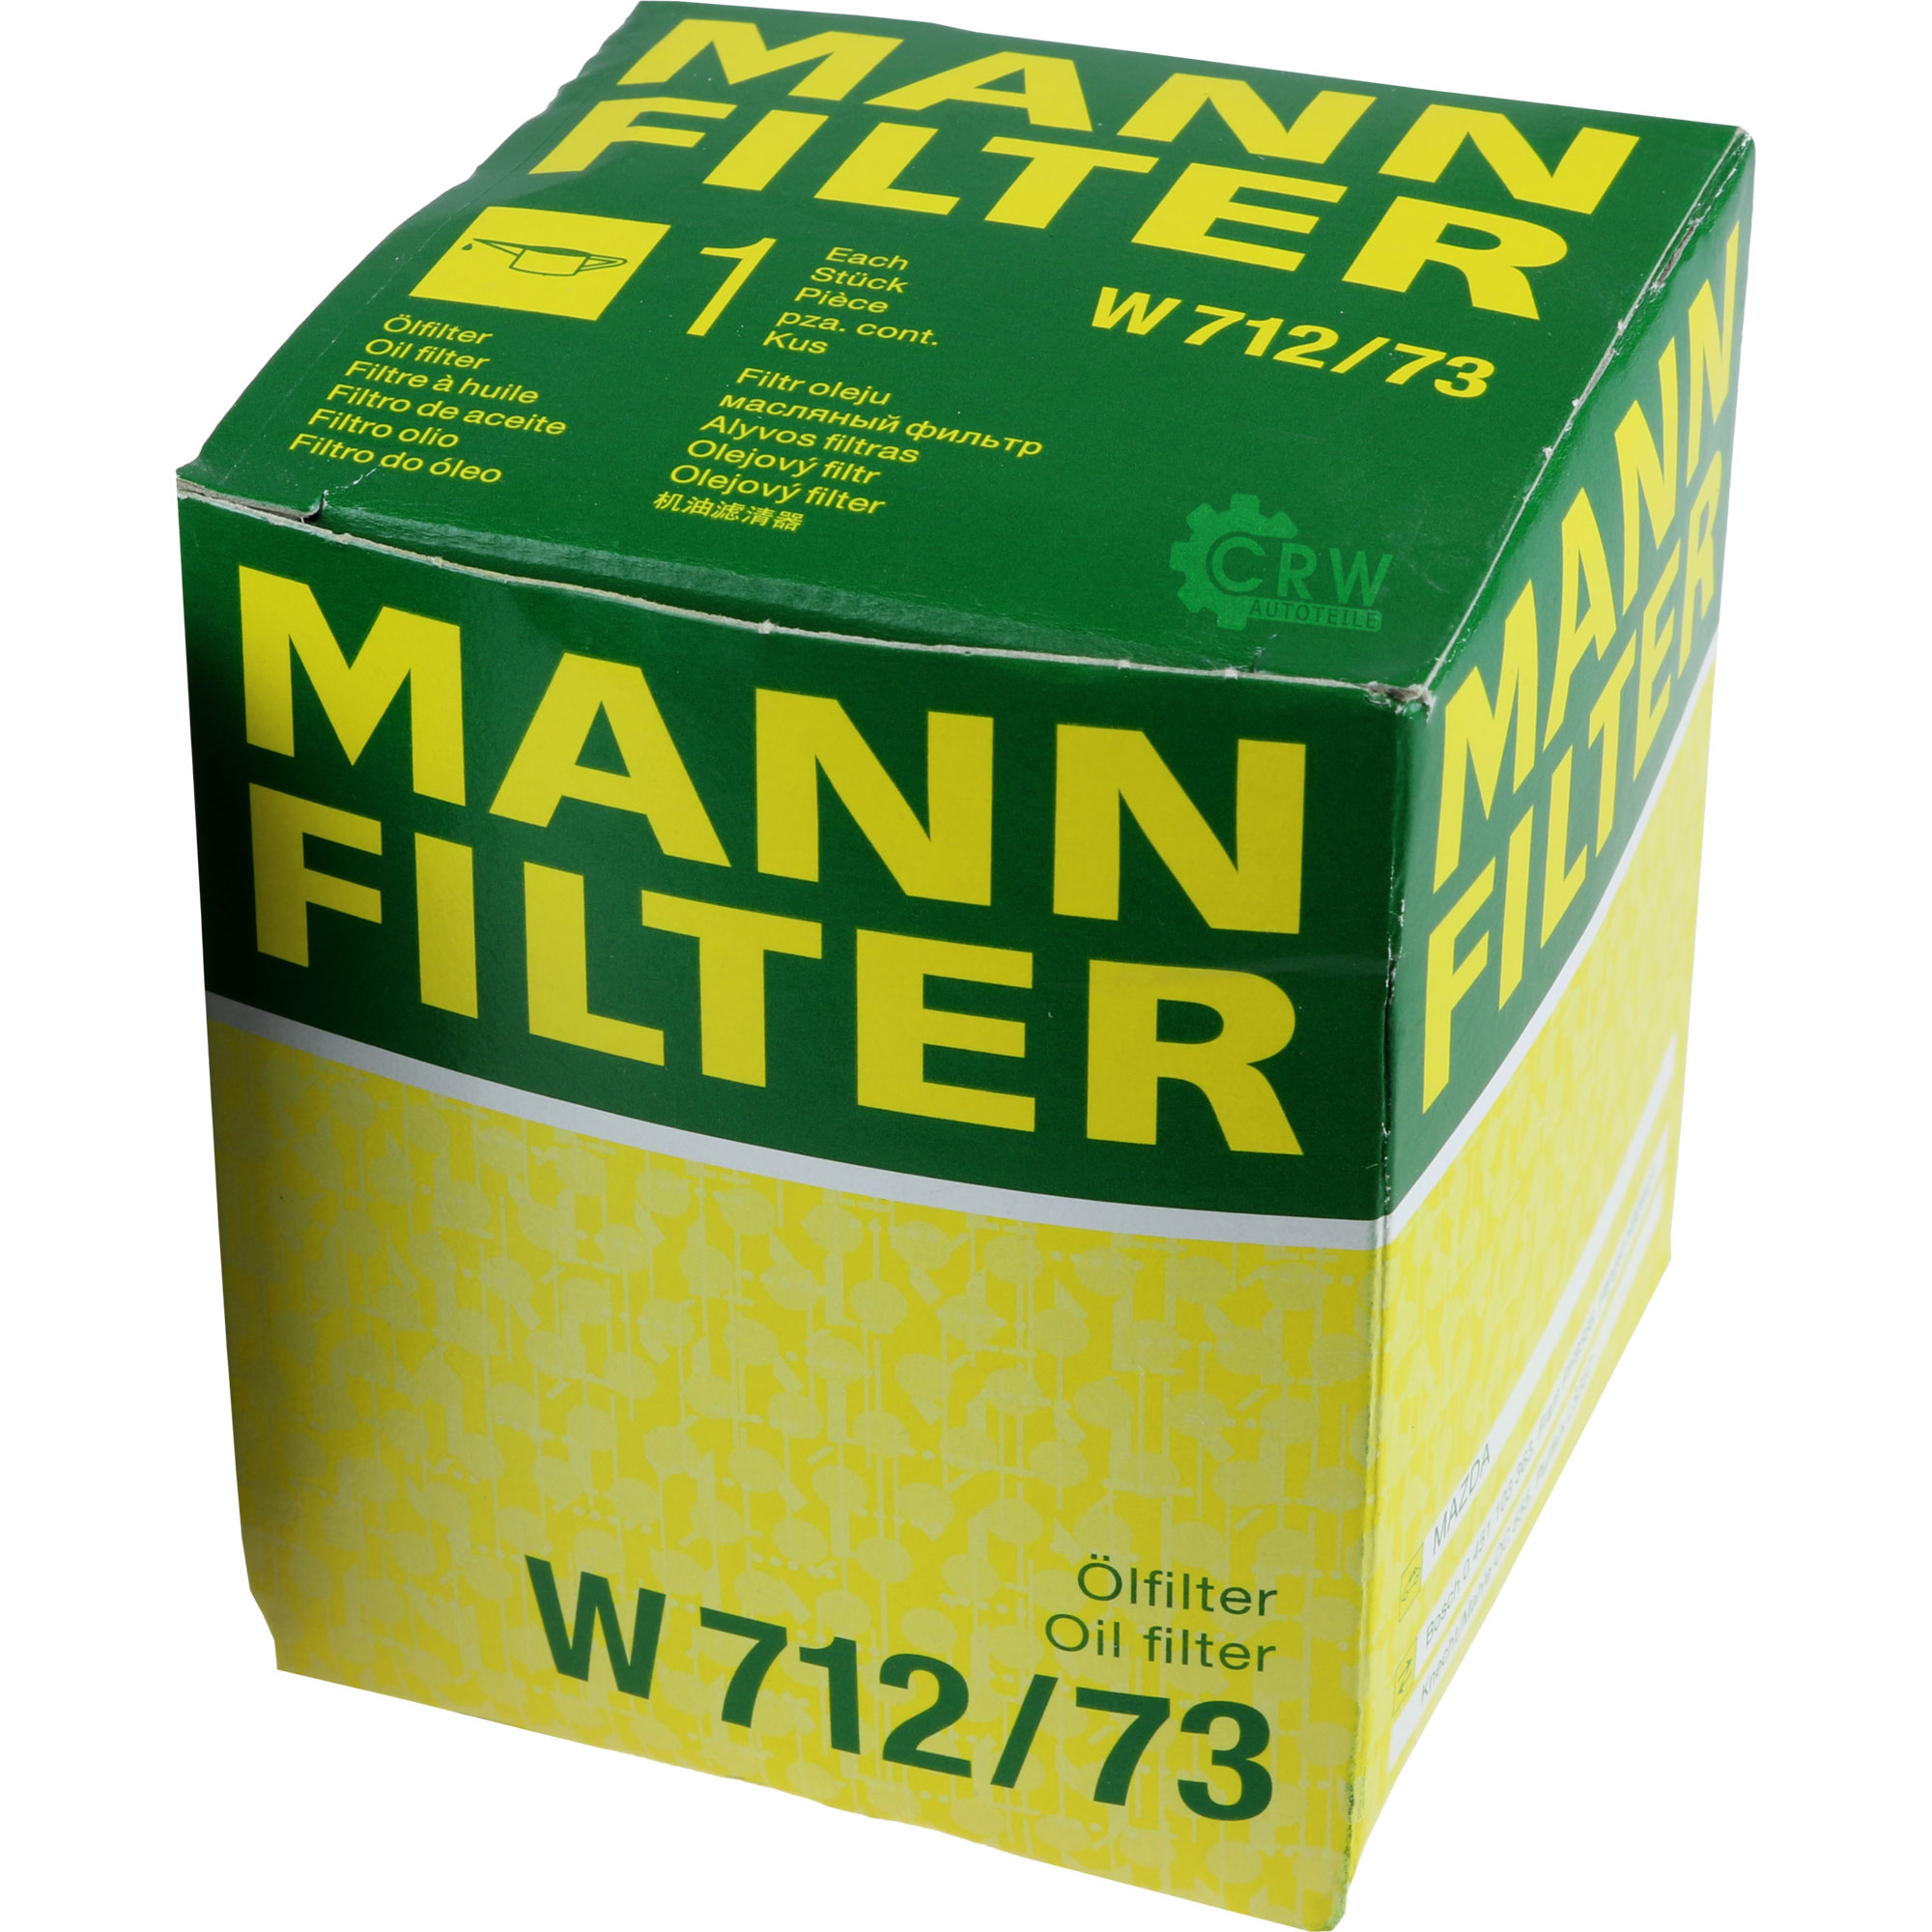 MANN-FILTER Ölfilter W 712/73 Oil Filter